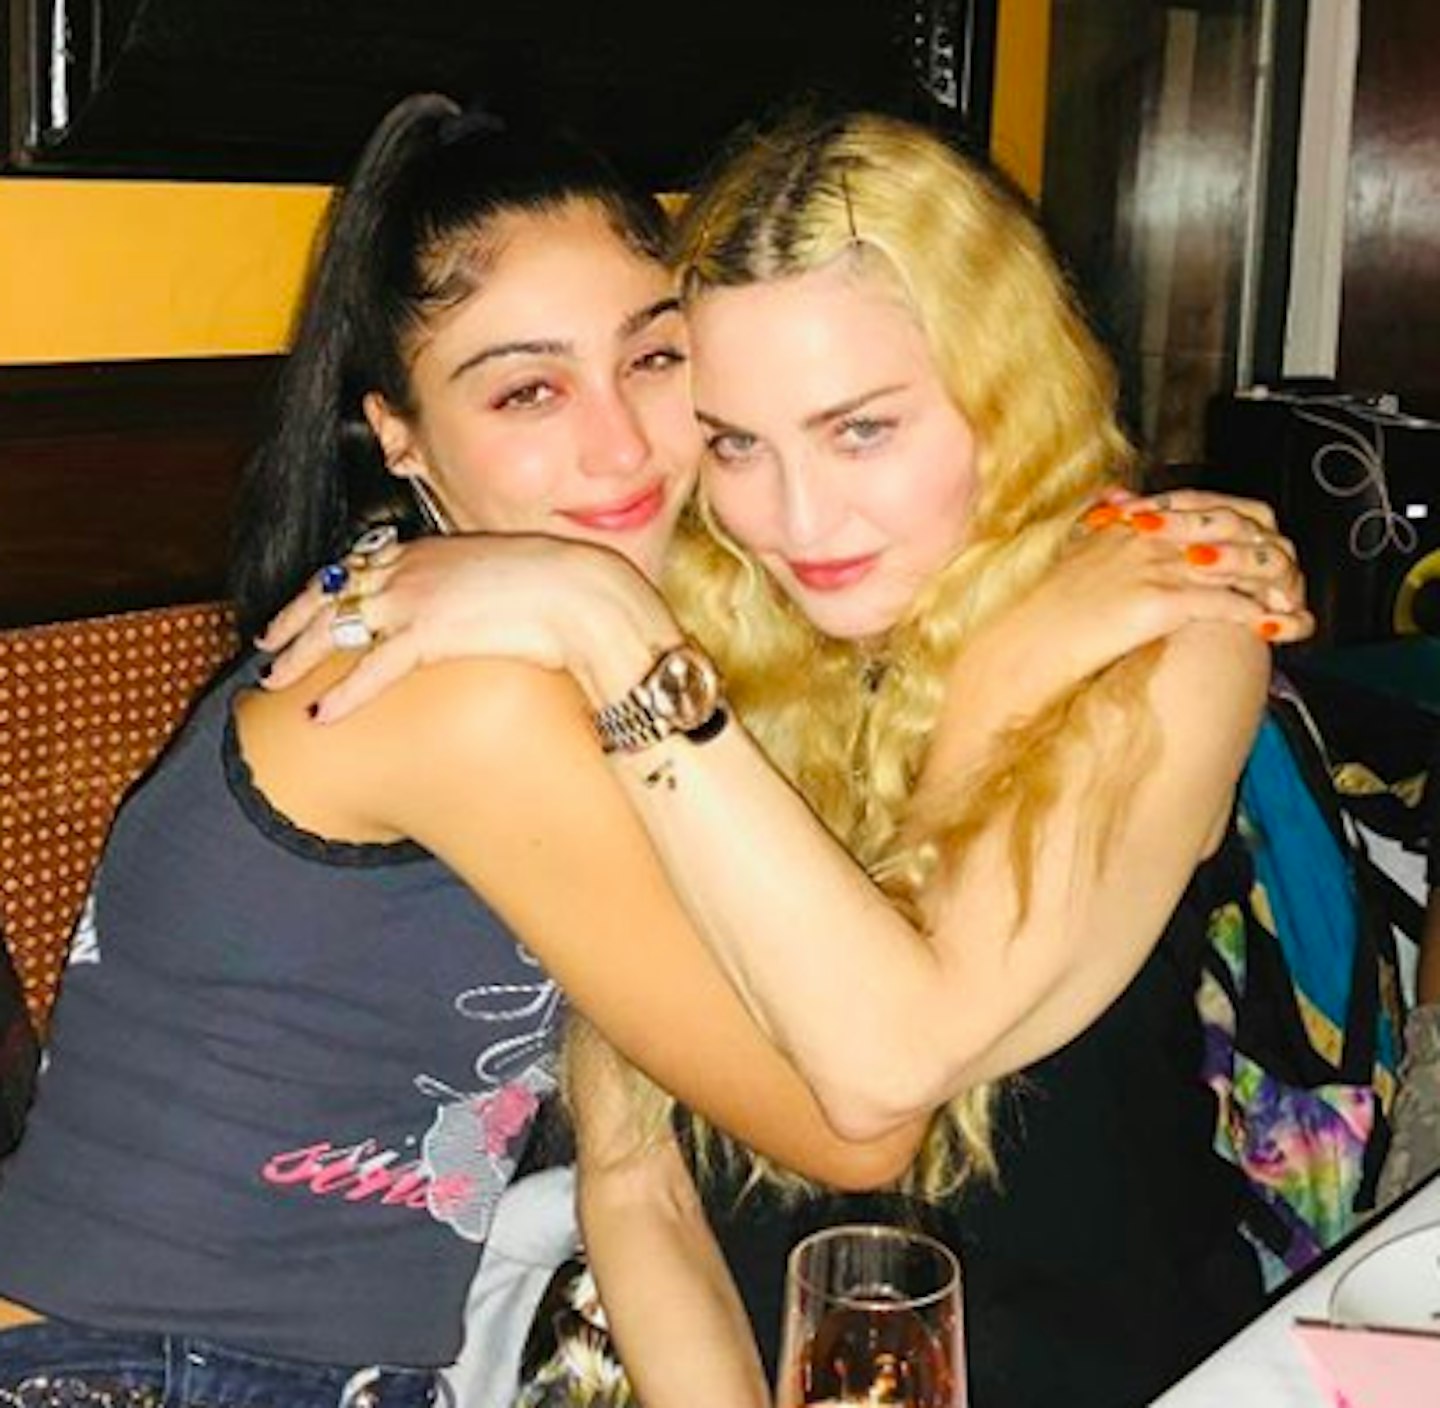 Madonna and Lourdes Leon